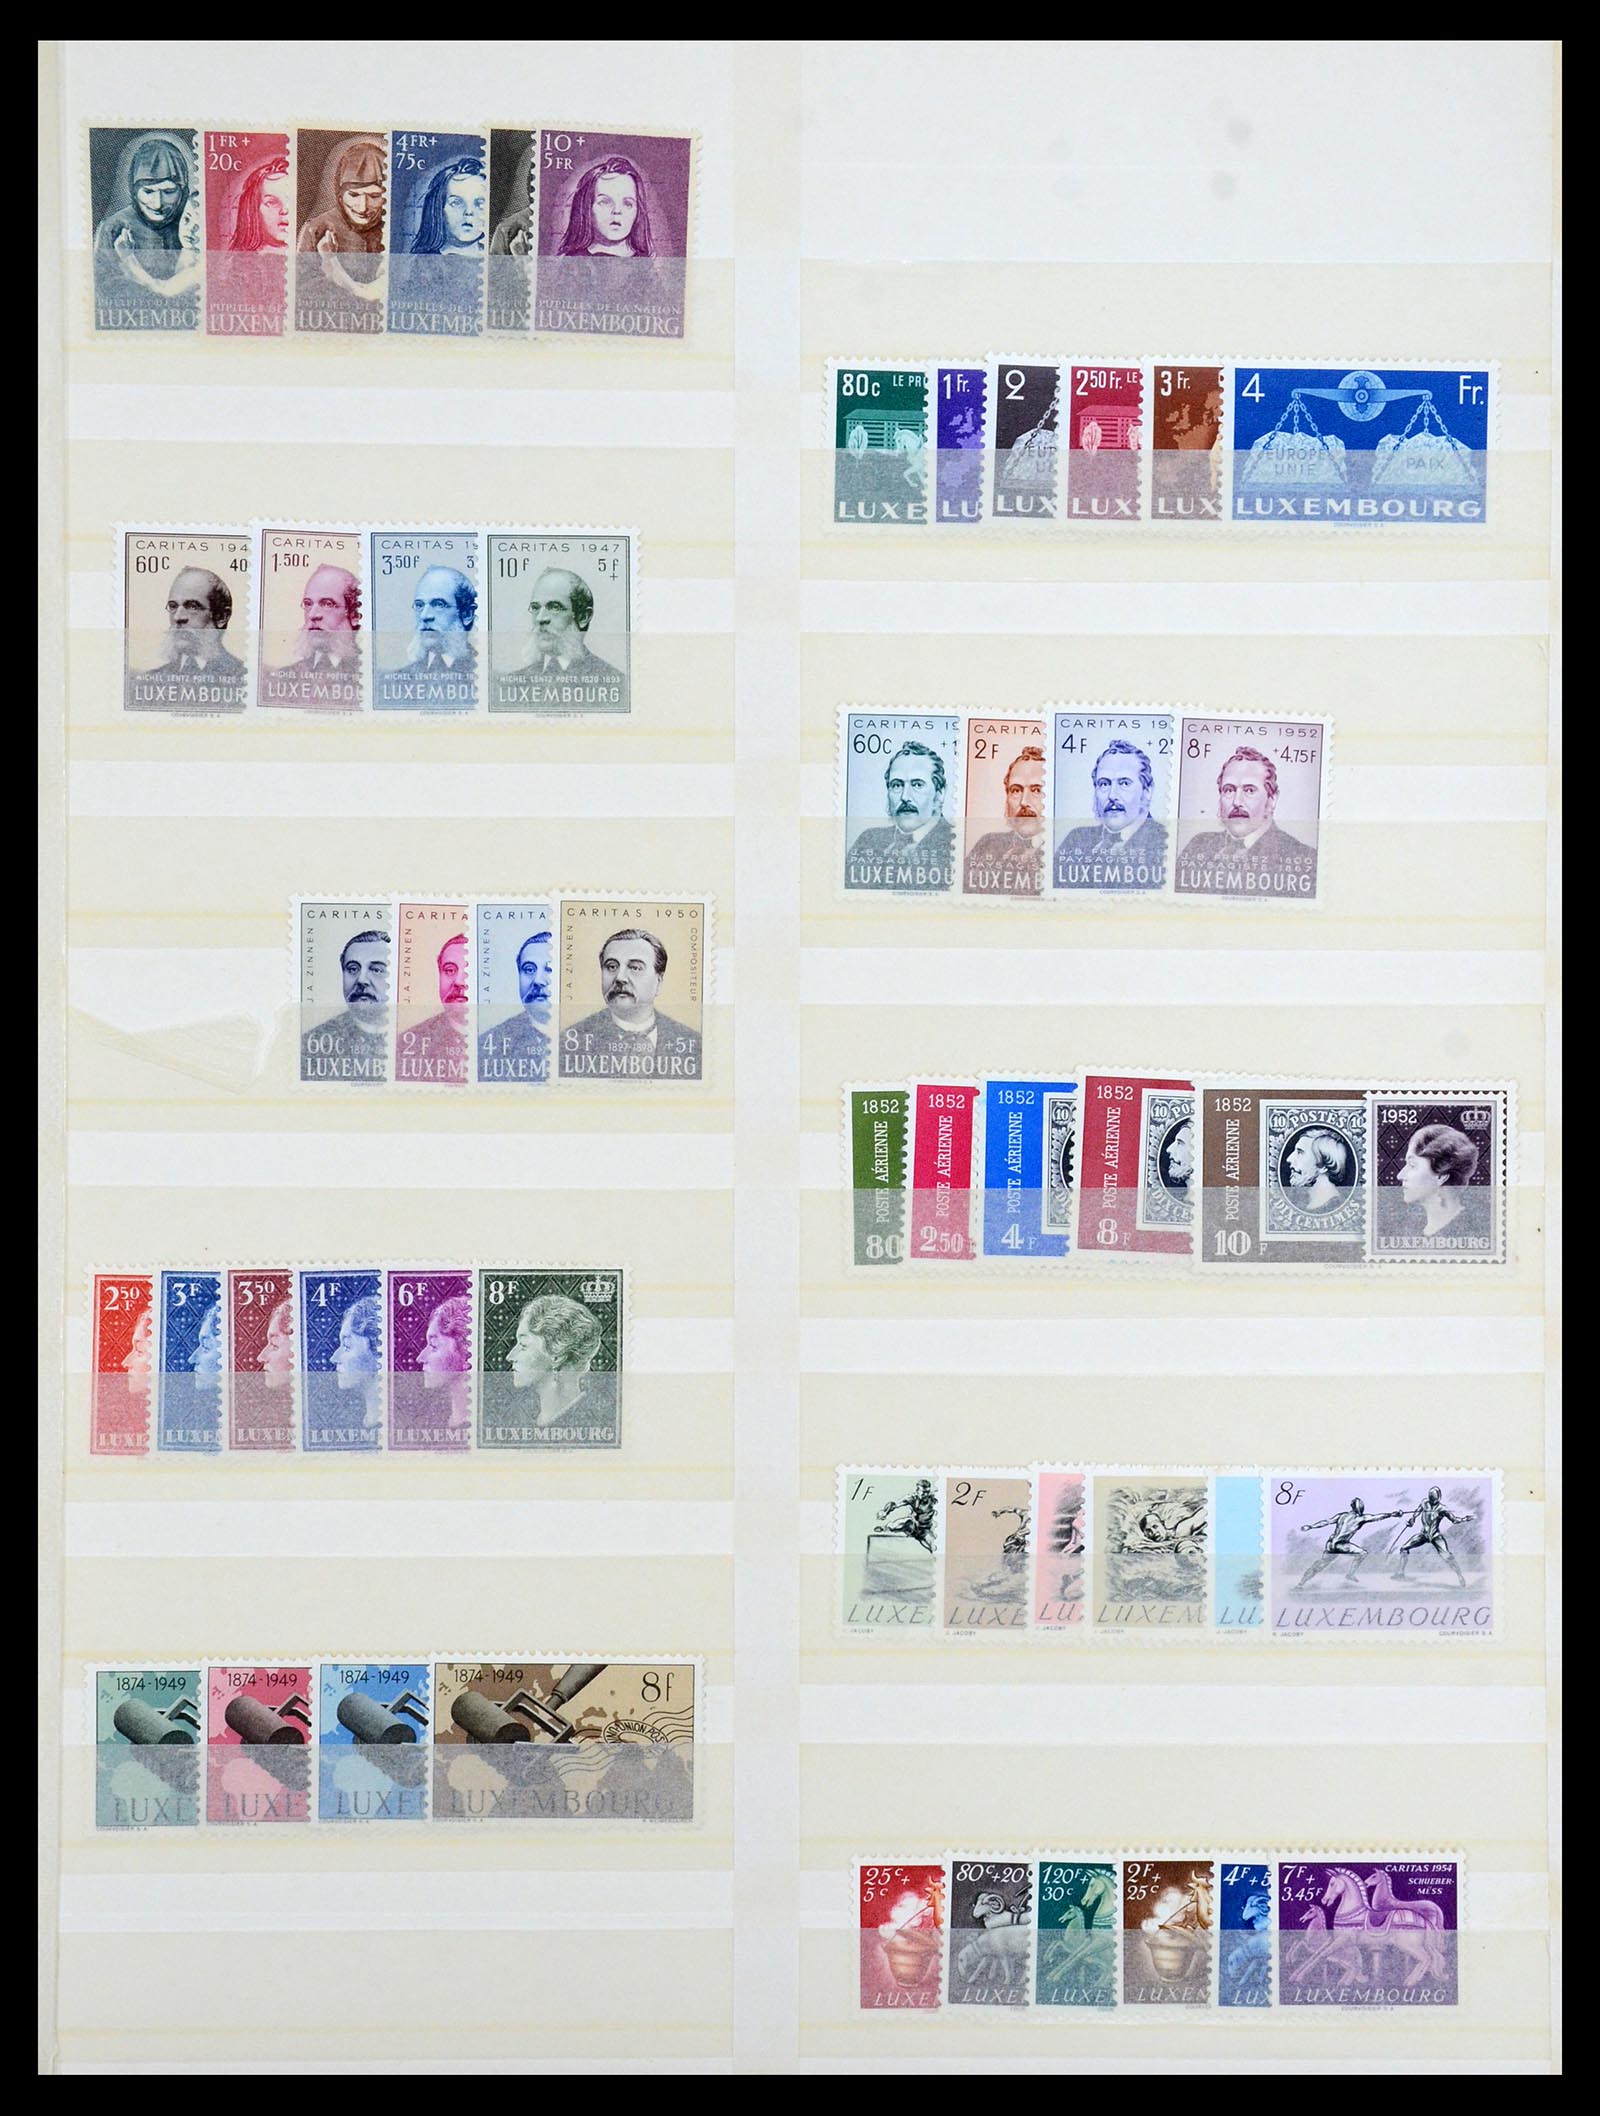 35165 009 - Postzegelverzameling 35165 Zwitserland en Luxemburg toppers.